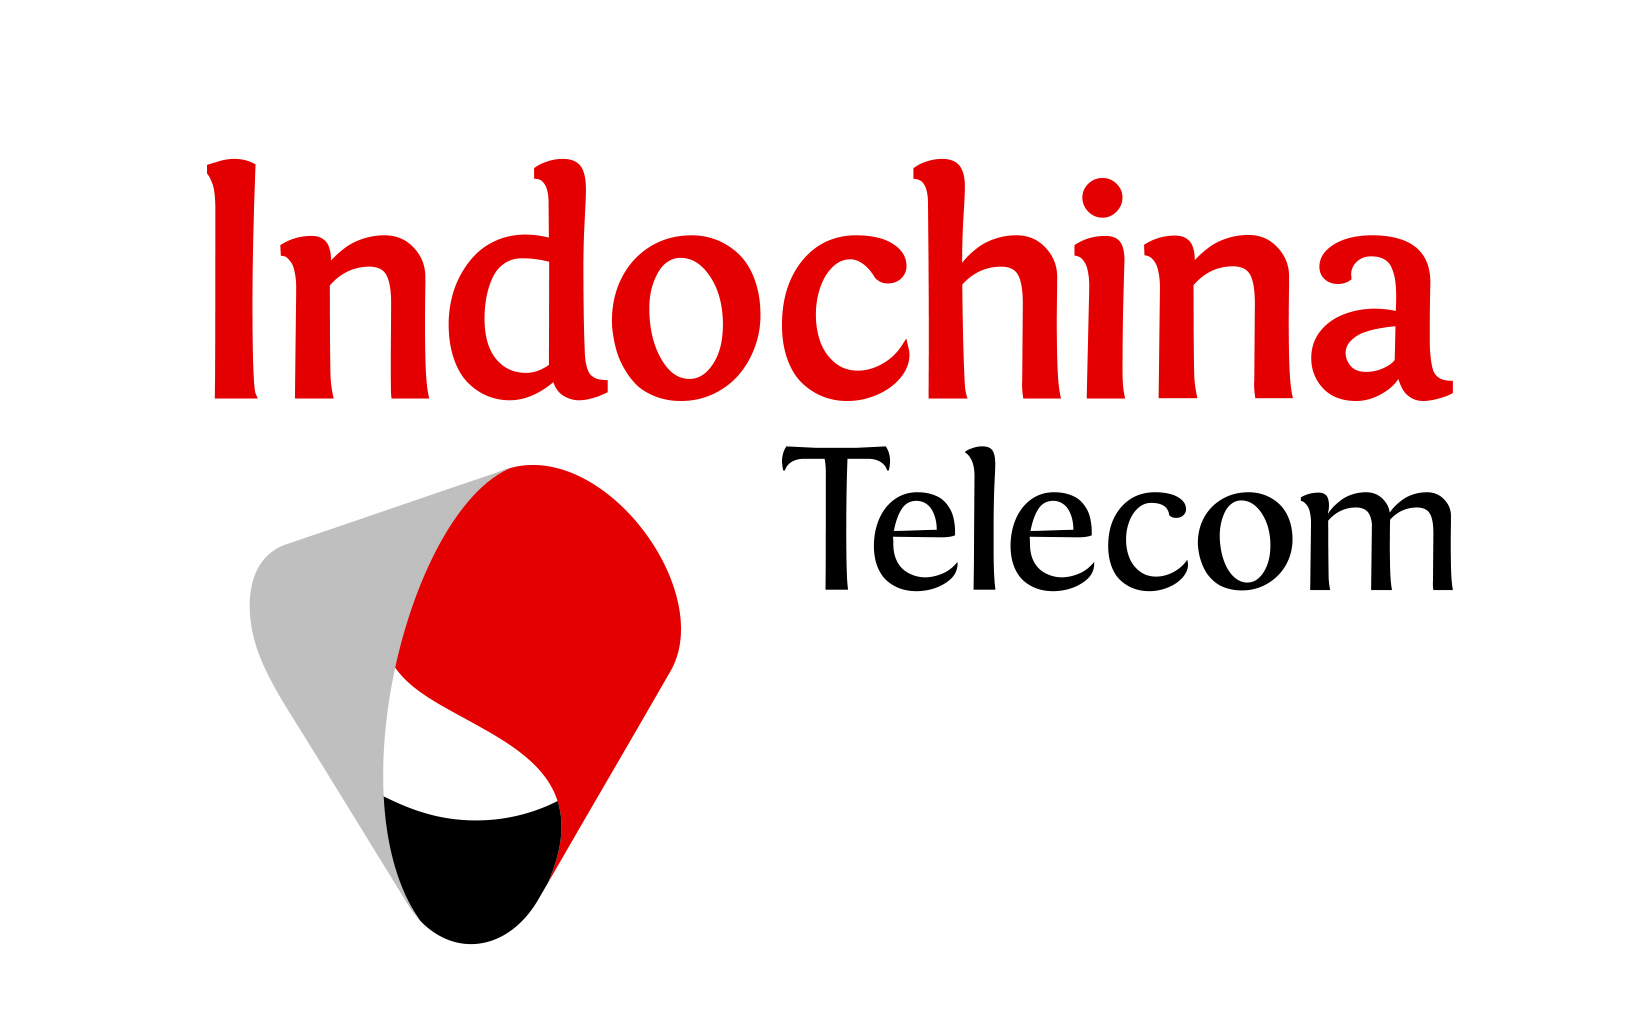 Mạng di động ITelecom ra mắt, dùng đầu số 087, gói cước 77k/tháng nhiều ưu đãi